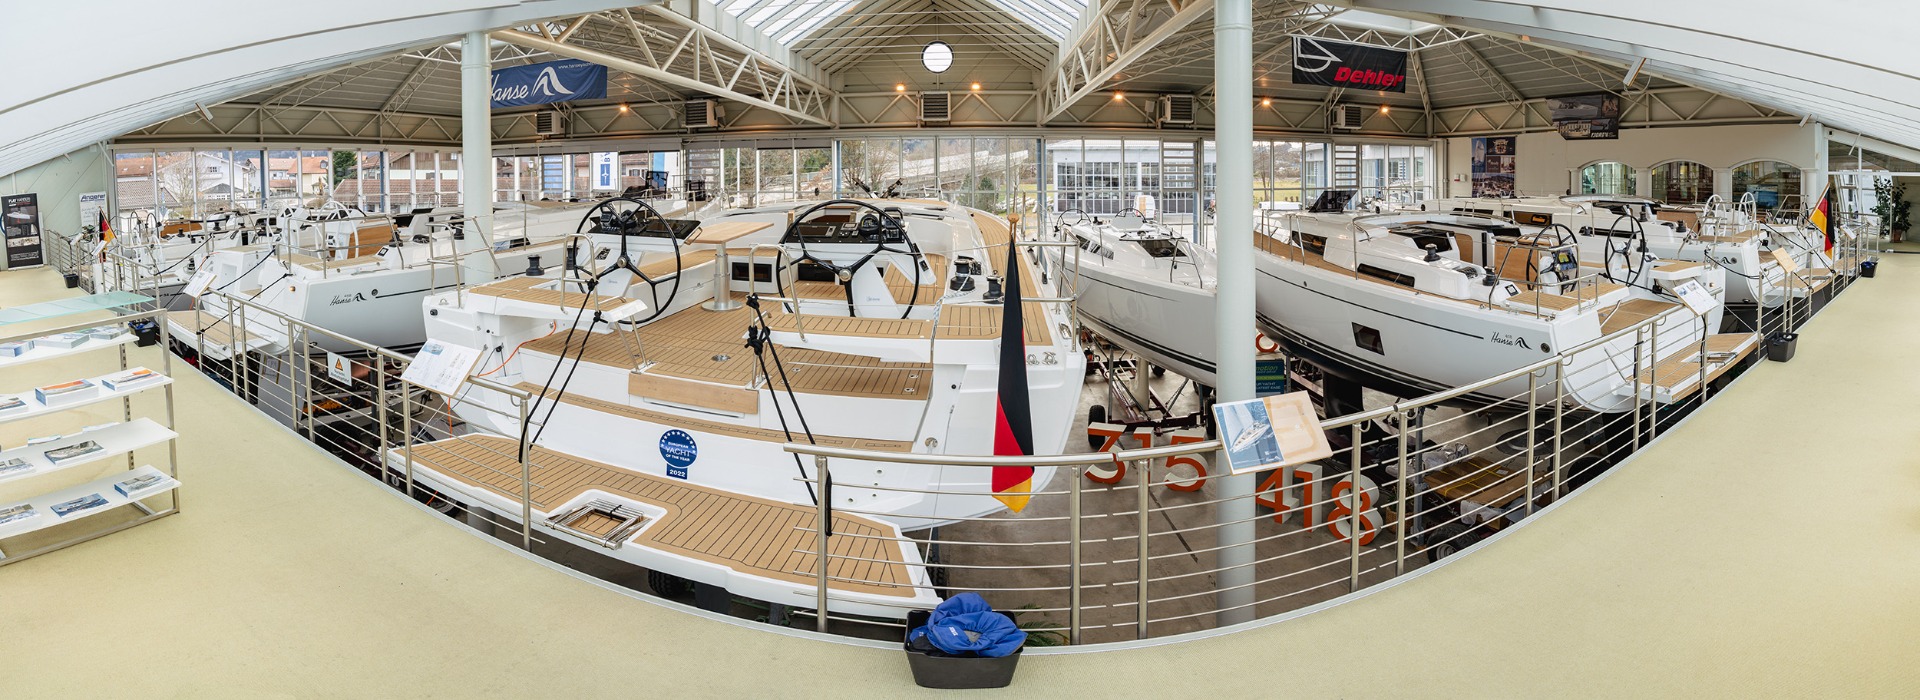 HVG Showroom: Verkauf von Hanse, Dehler und Moody Segelyachten im Yachtcentrum am Chiemsee. Verkauf von Sealine und Fjord Motoryachten. Verkauf von Privilège Luxus-Katamaranen.